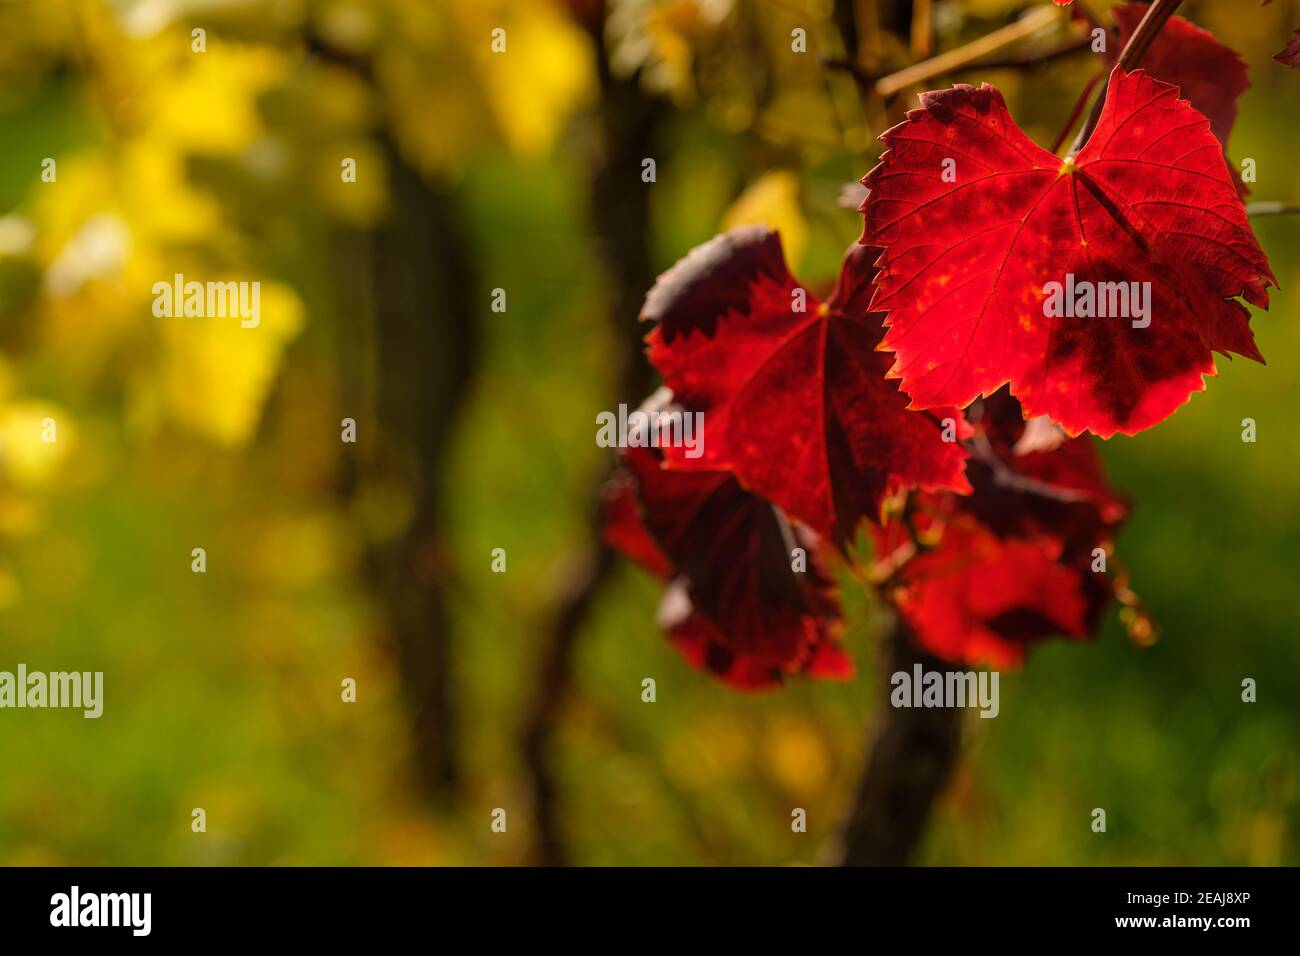 Foglia d'uva rossa nella parte posteriore illuminata dal sole d'autunno Foto Stock